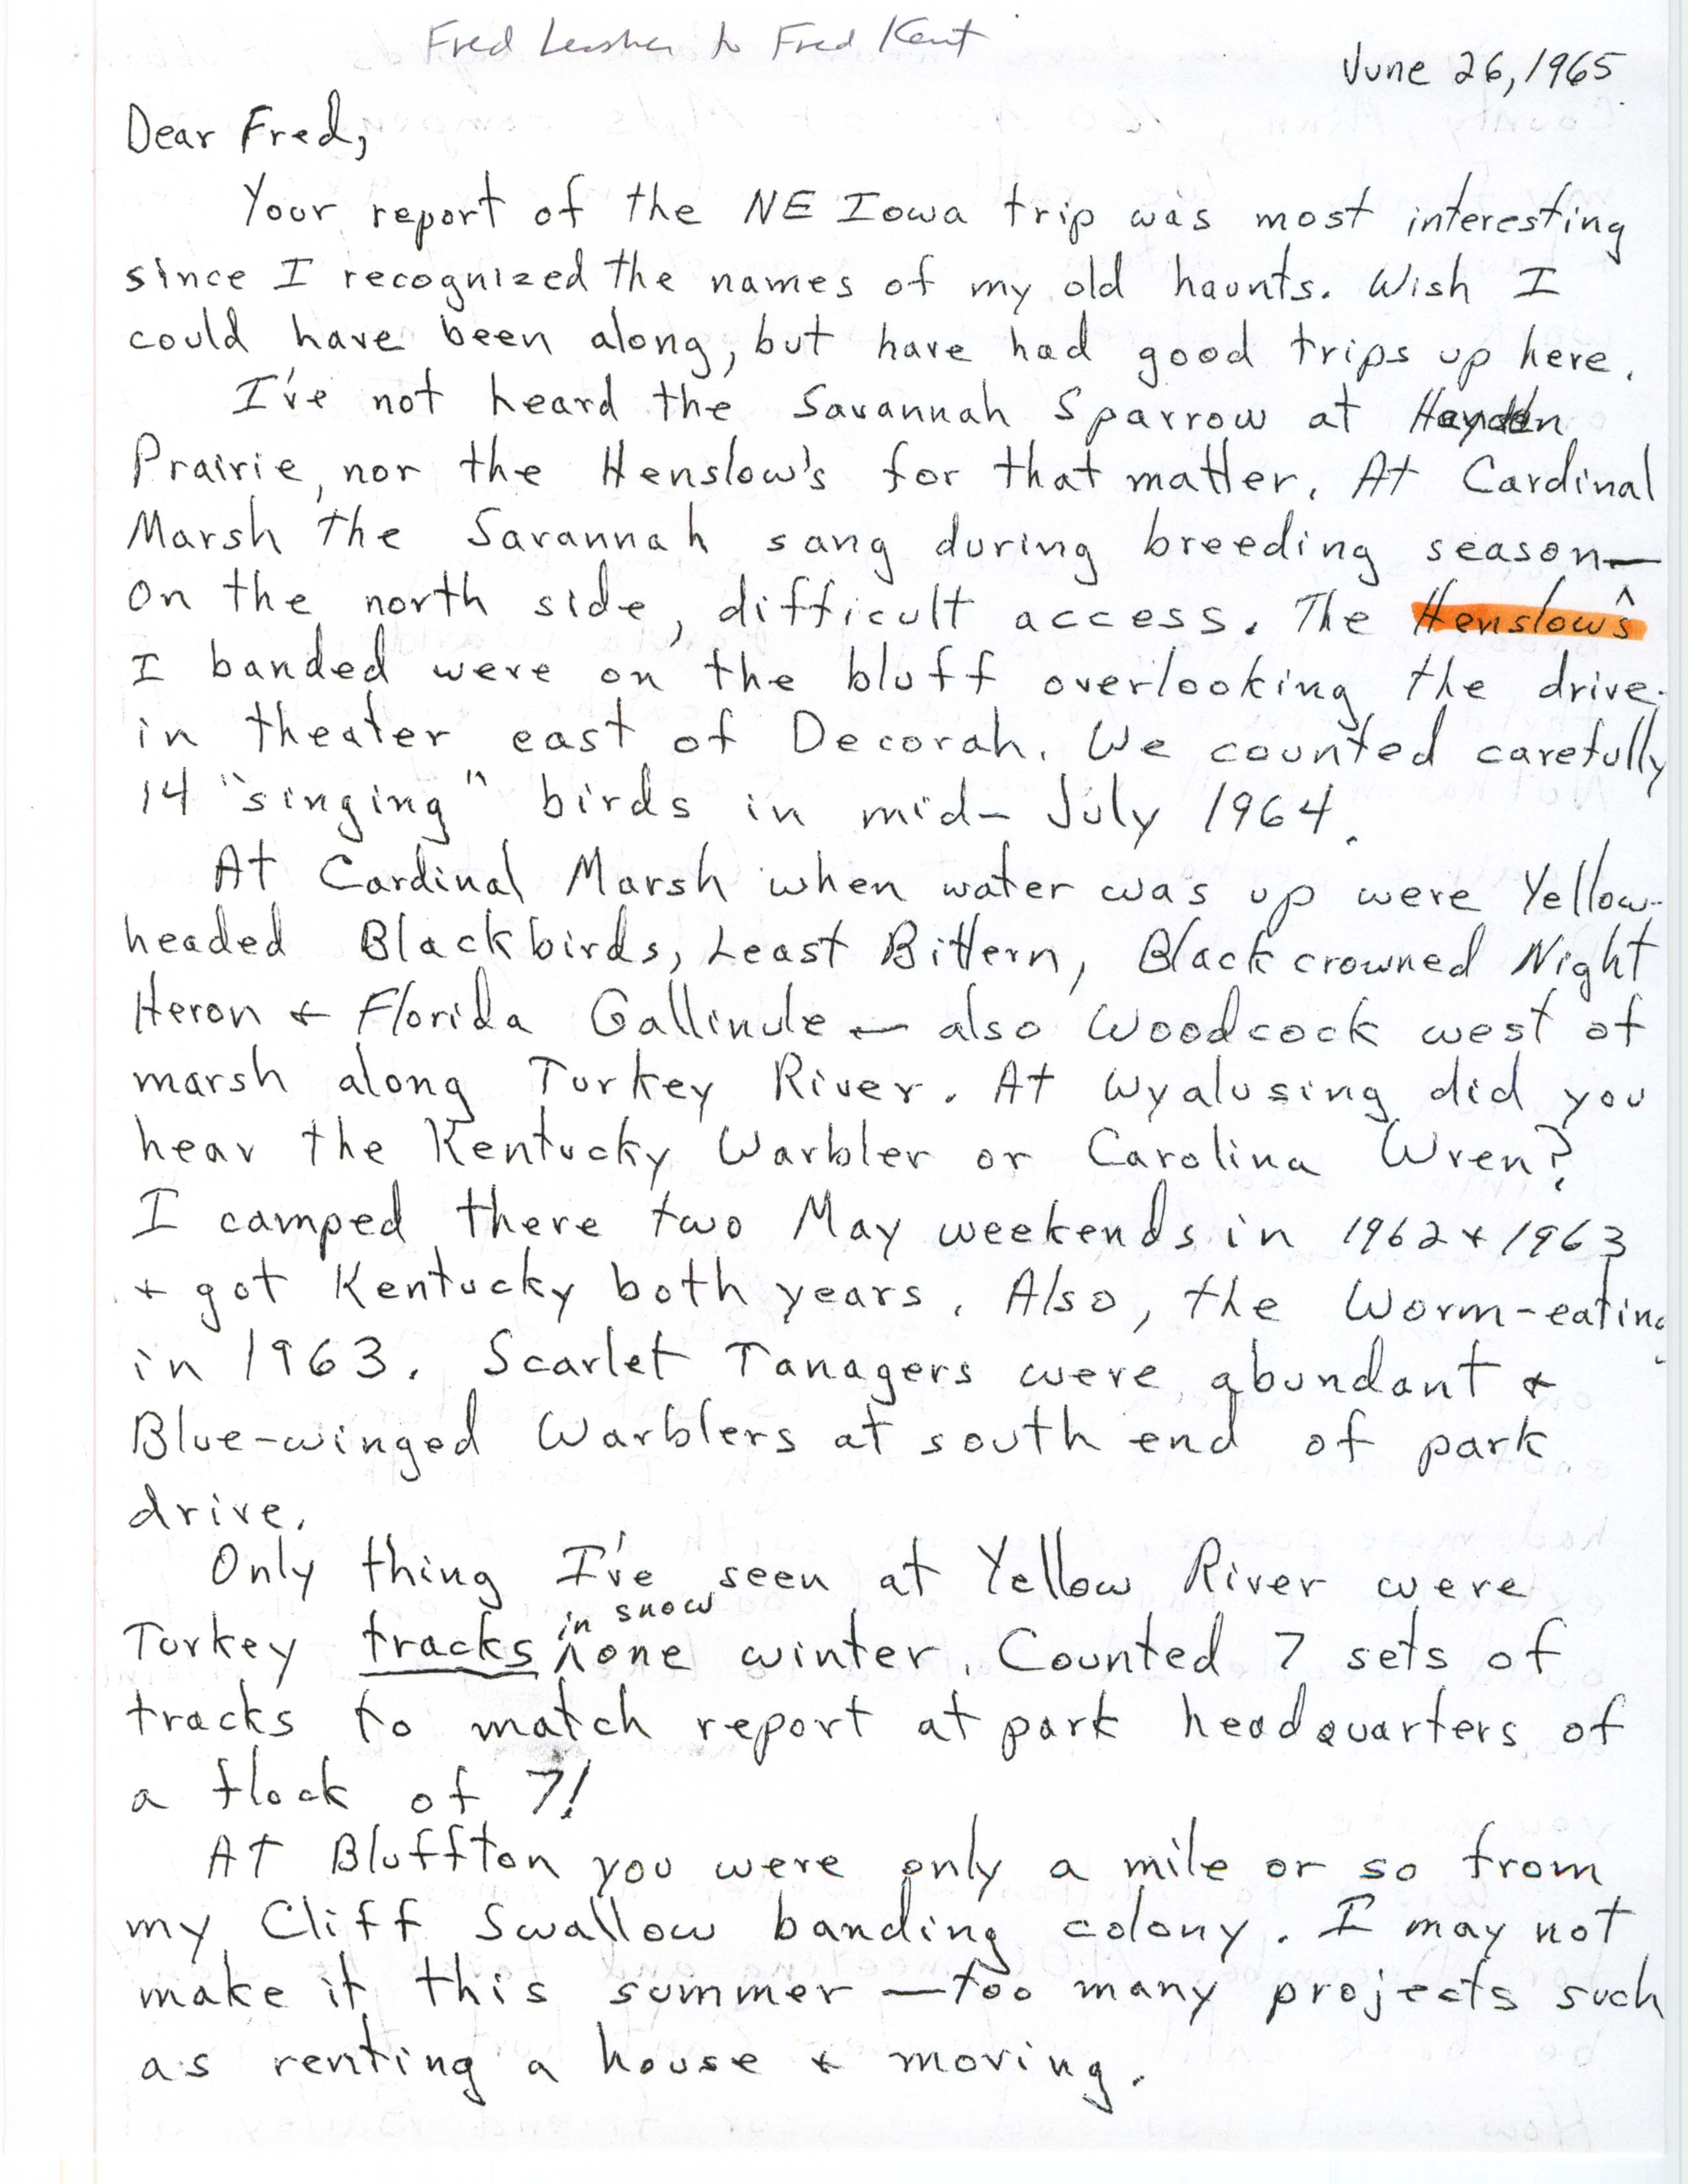 Fred Lesher letter to Fred Kent regarding bird sightings, June 26, 1965